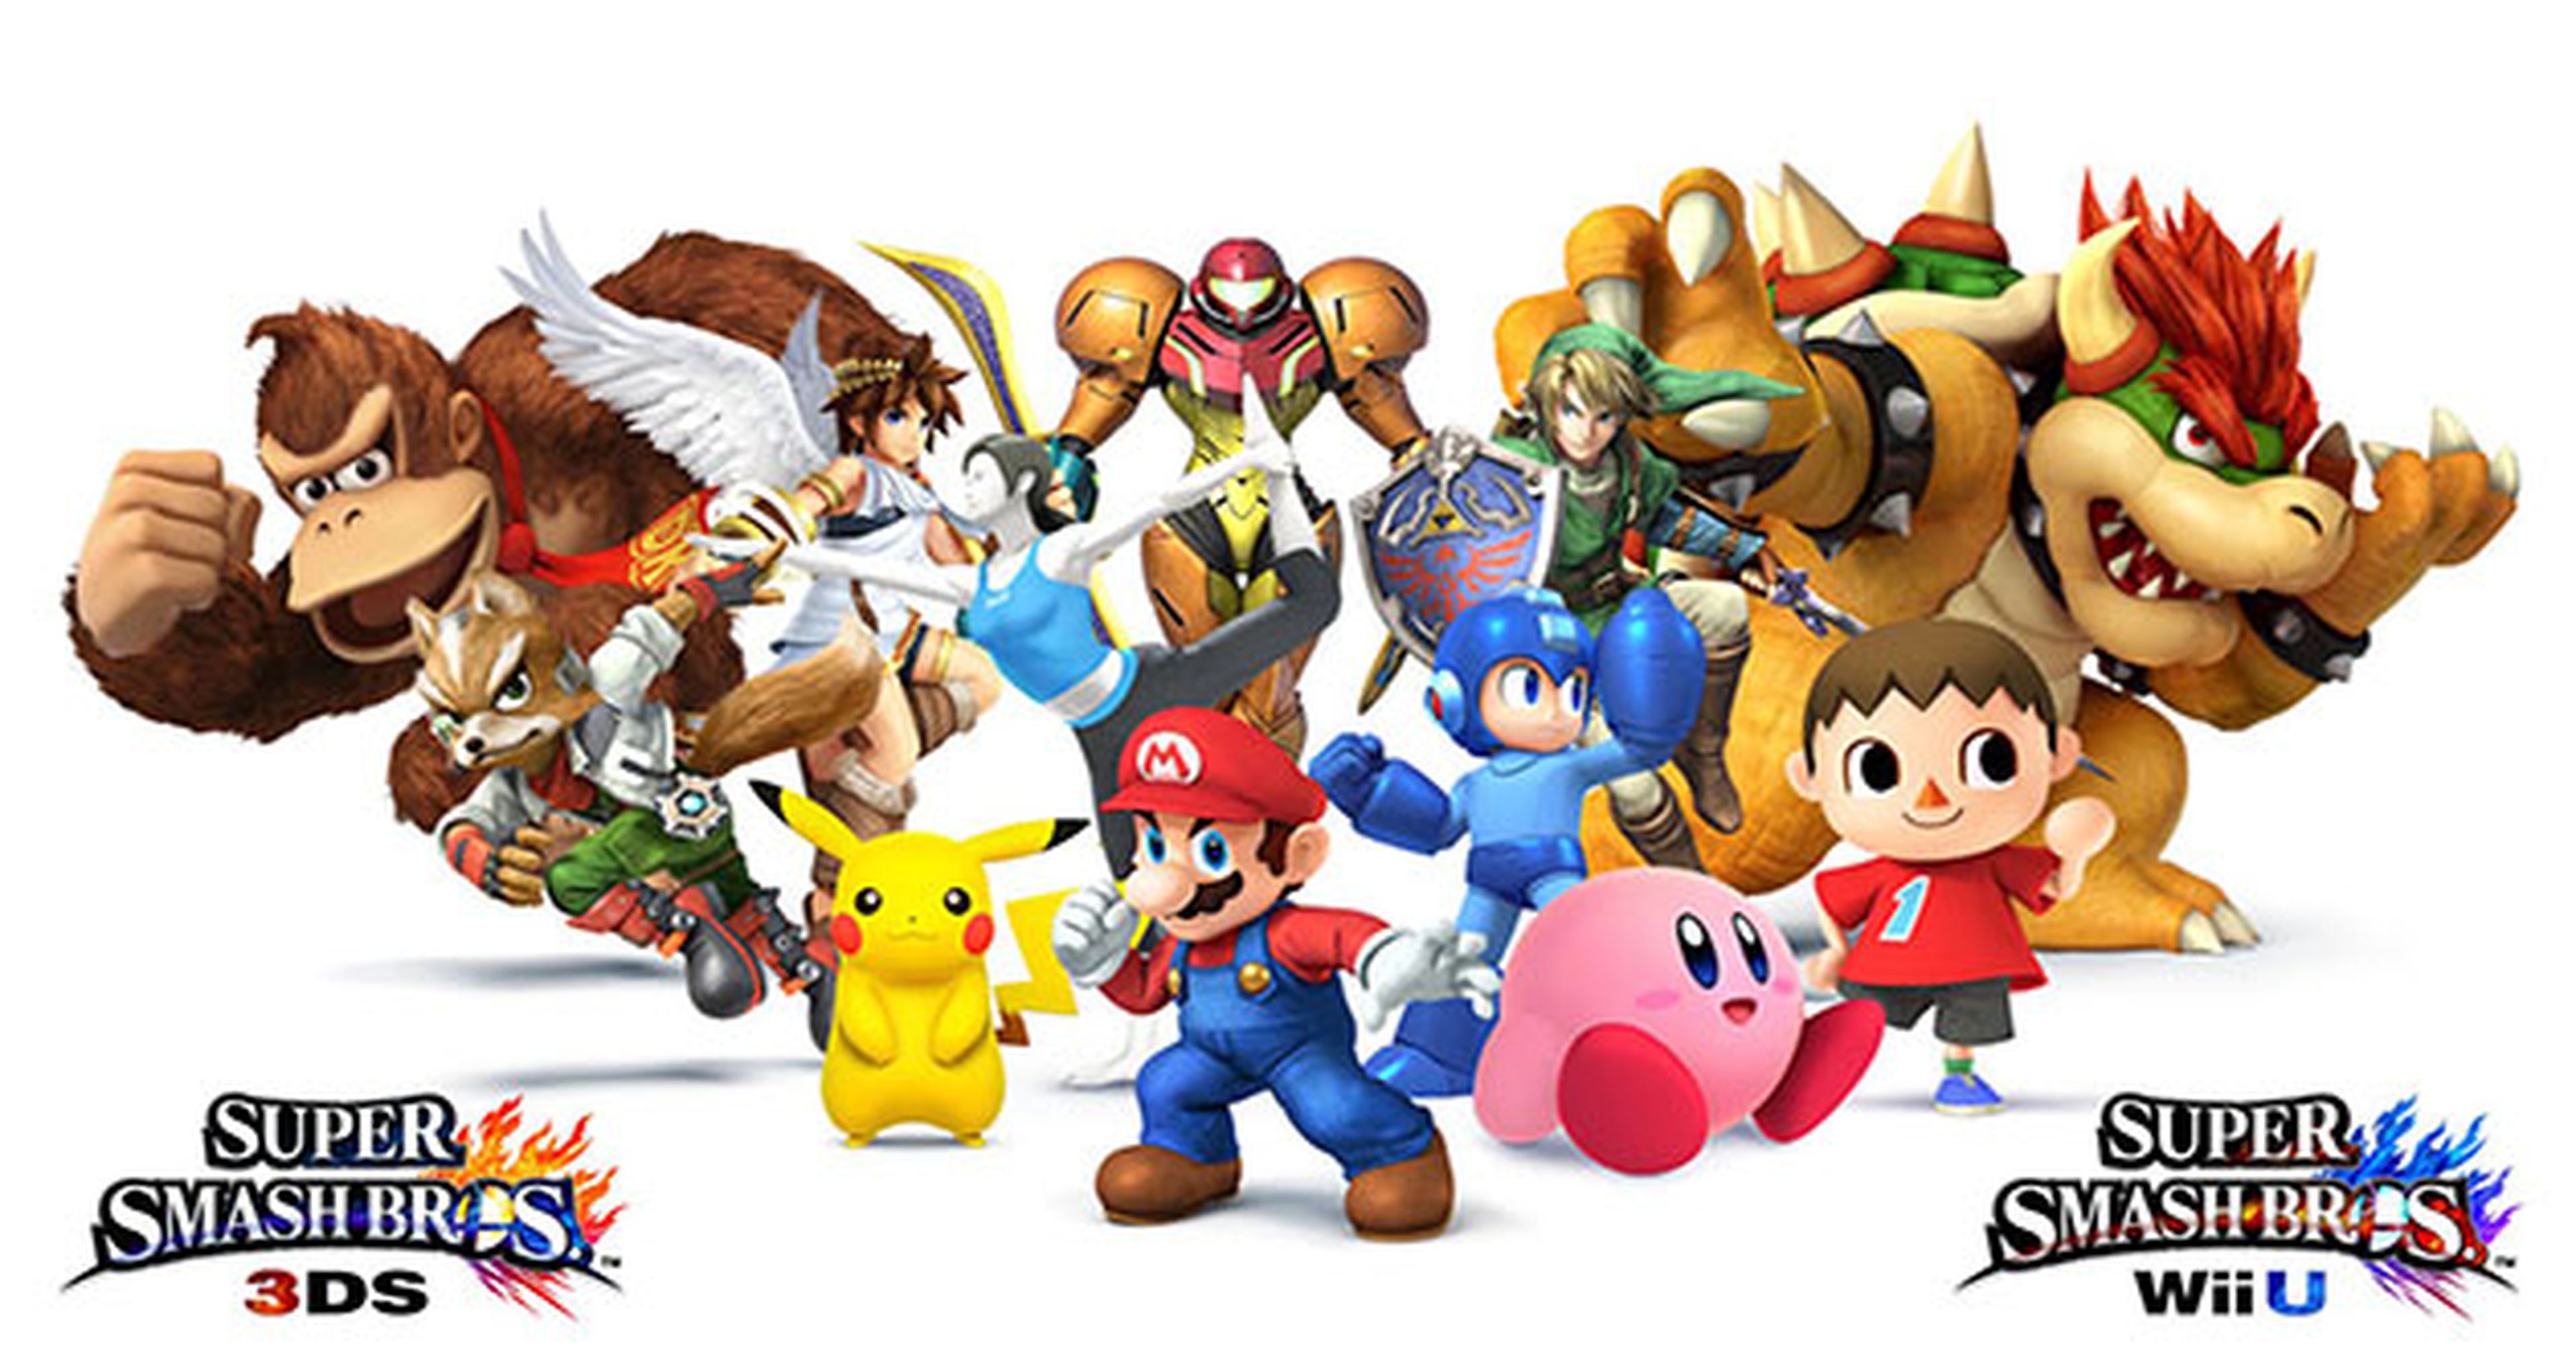 Desvelada la fecha de lanzamiento de Super Smash Bros de Wii U